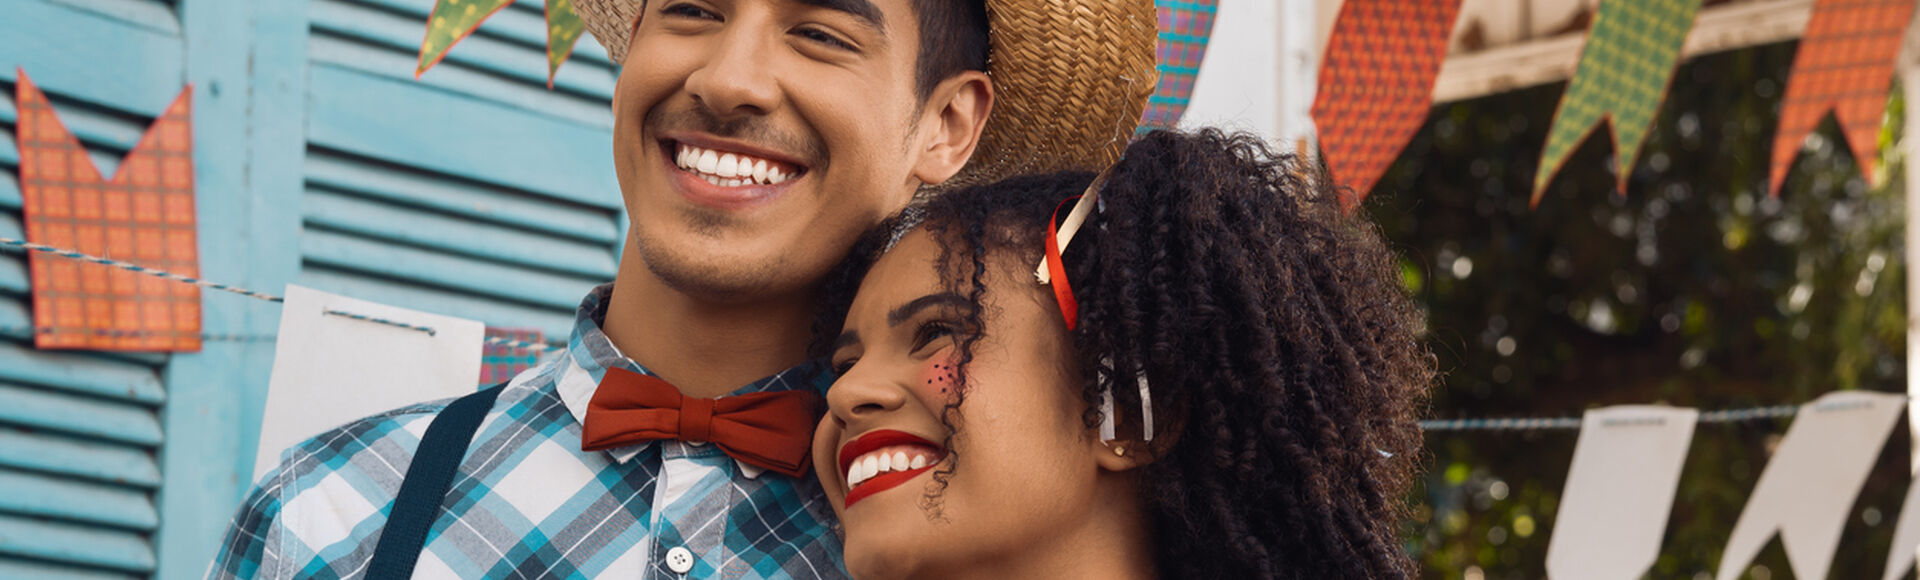 Casal jovem de homem e mulher com trajes caipiras e bandeirolas de festa junina ao fundo, em artigo sobre charraiá de fraldas